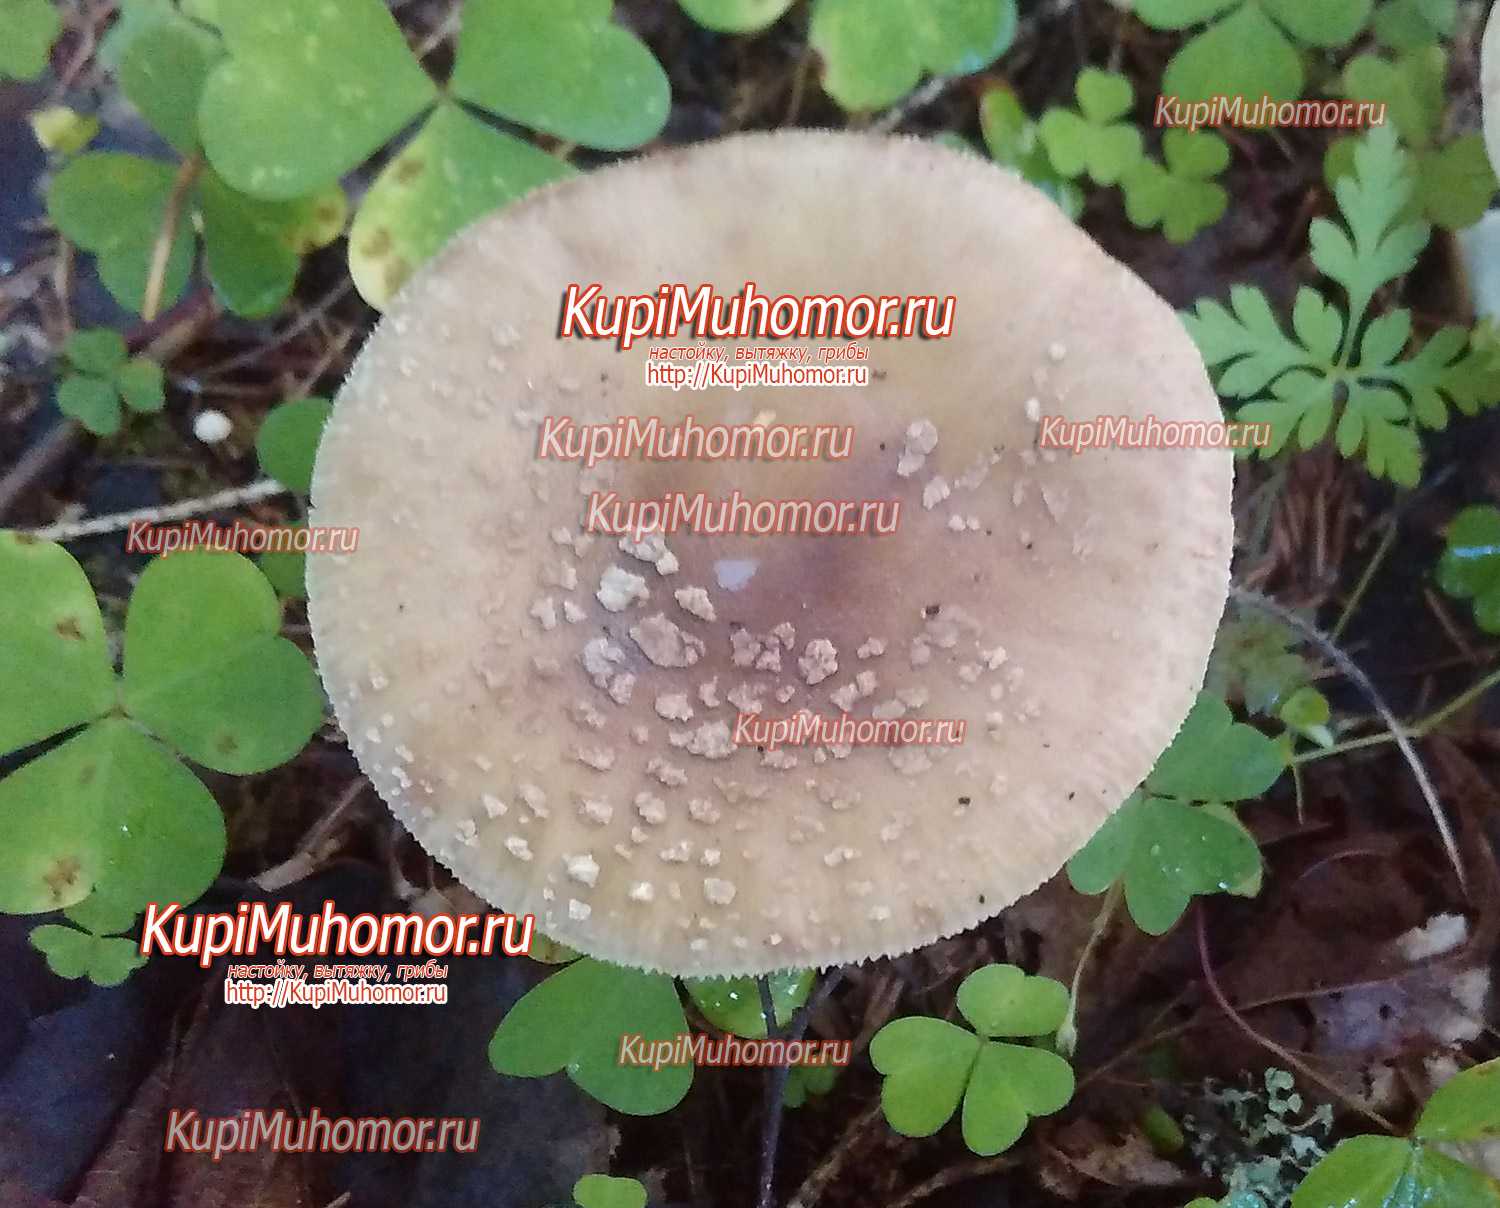 Мухомор виттадини (amanita vittadinii): как выглядит, где и как растет, съедобный или ядовитый